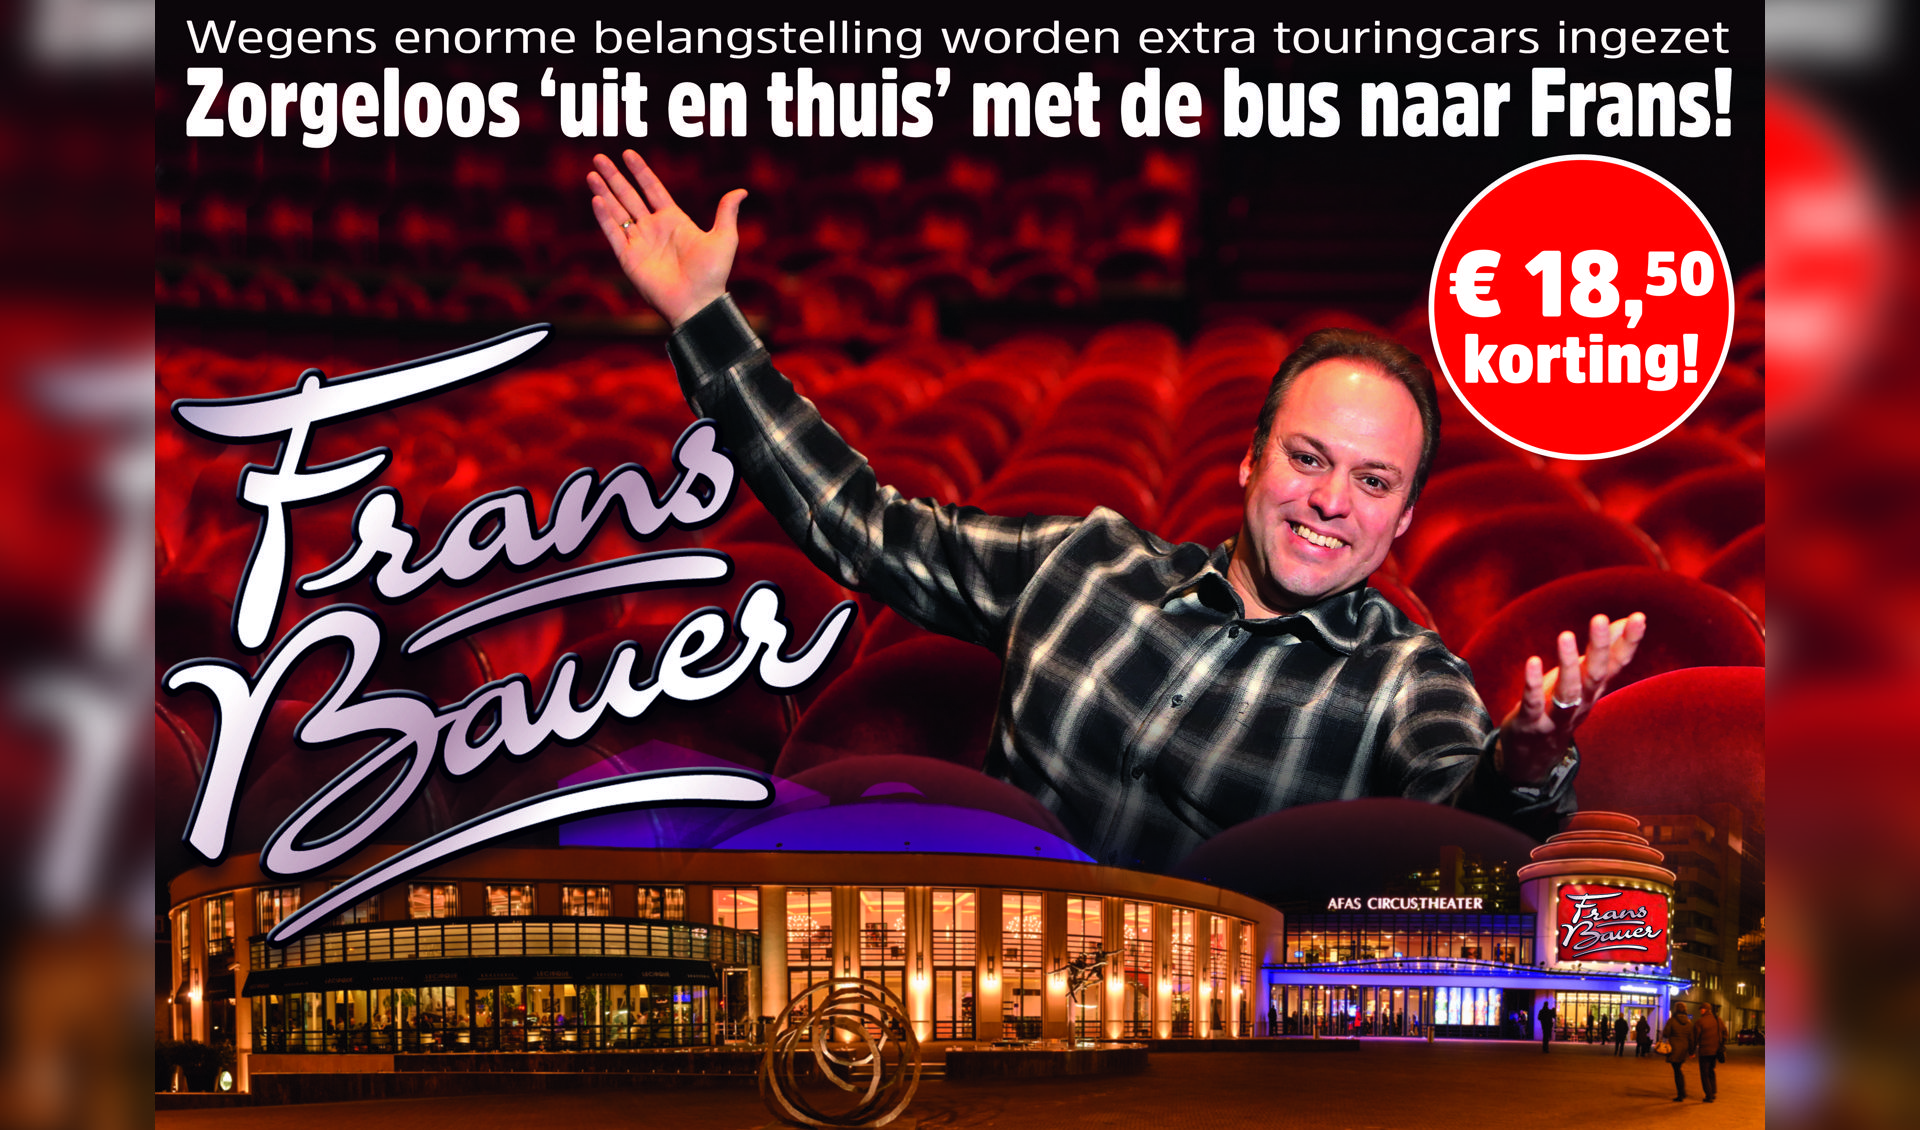 Voordelig mee naar het jubileumconcert van Frans Bauer in het Circustheater te Scheveningen.